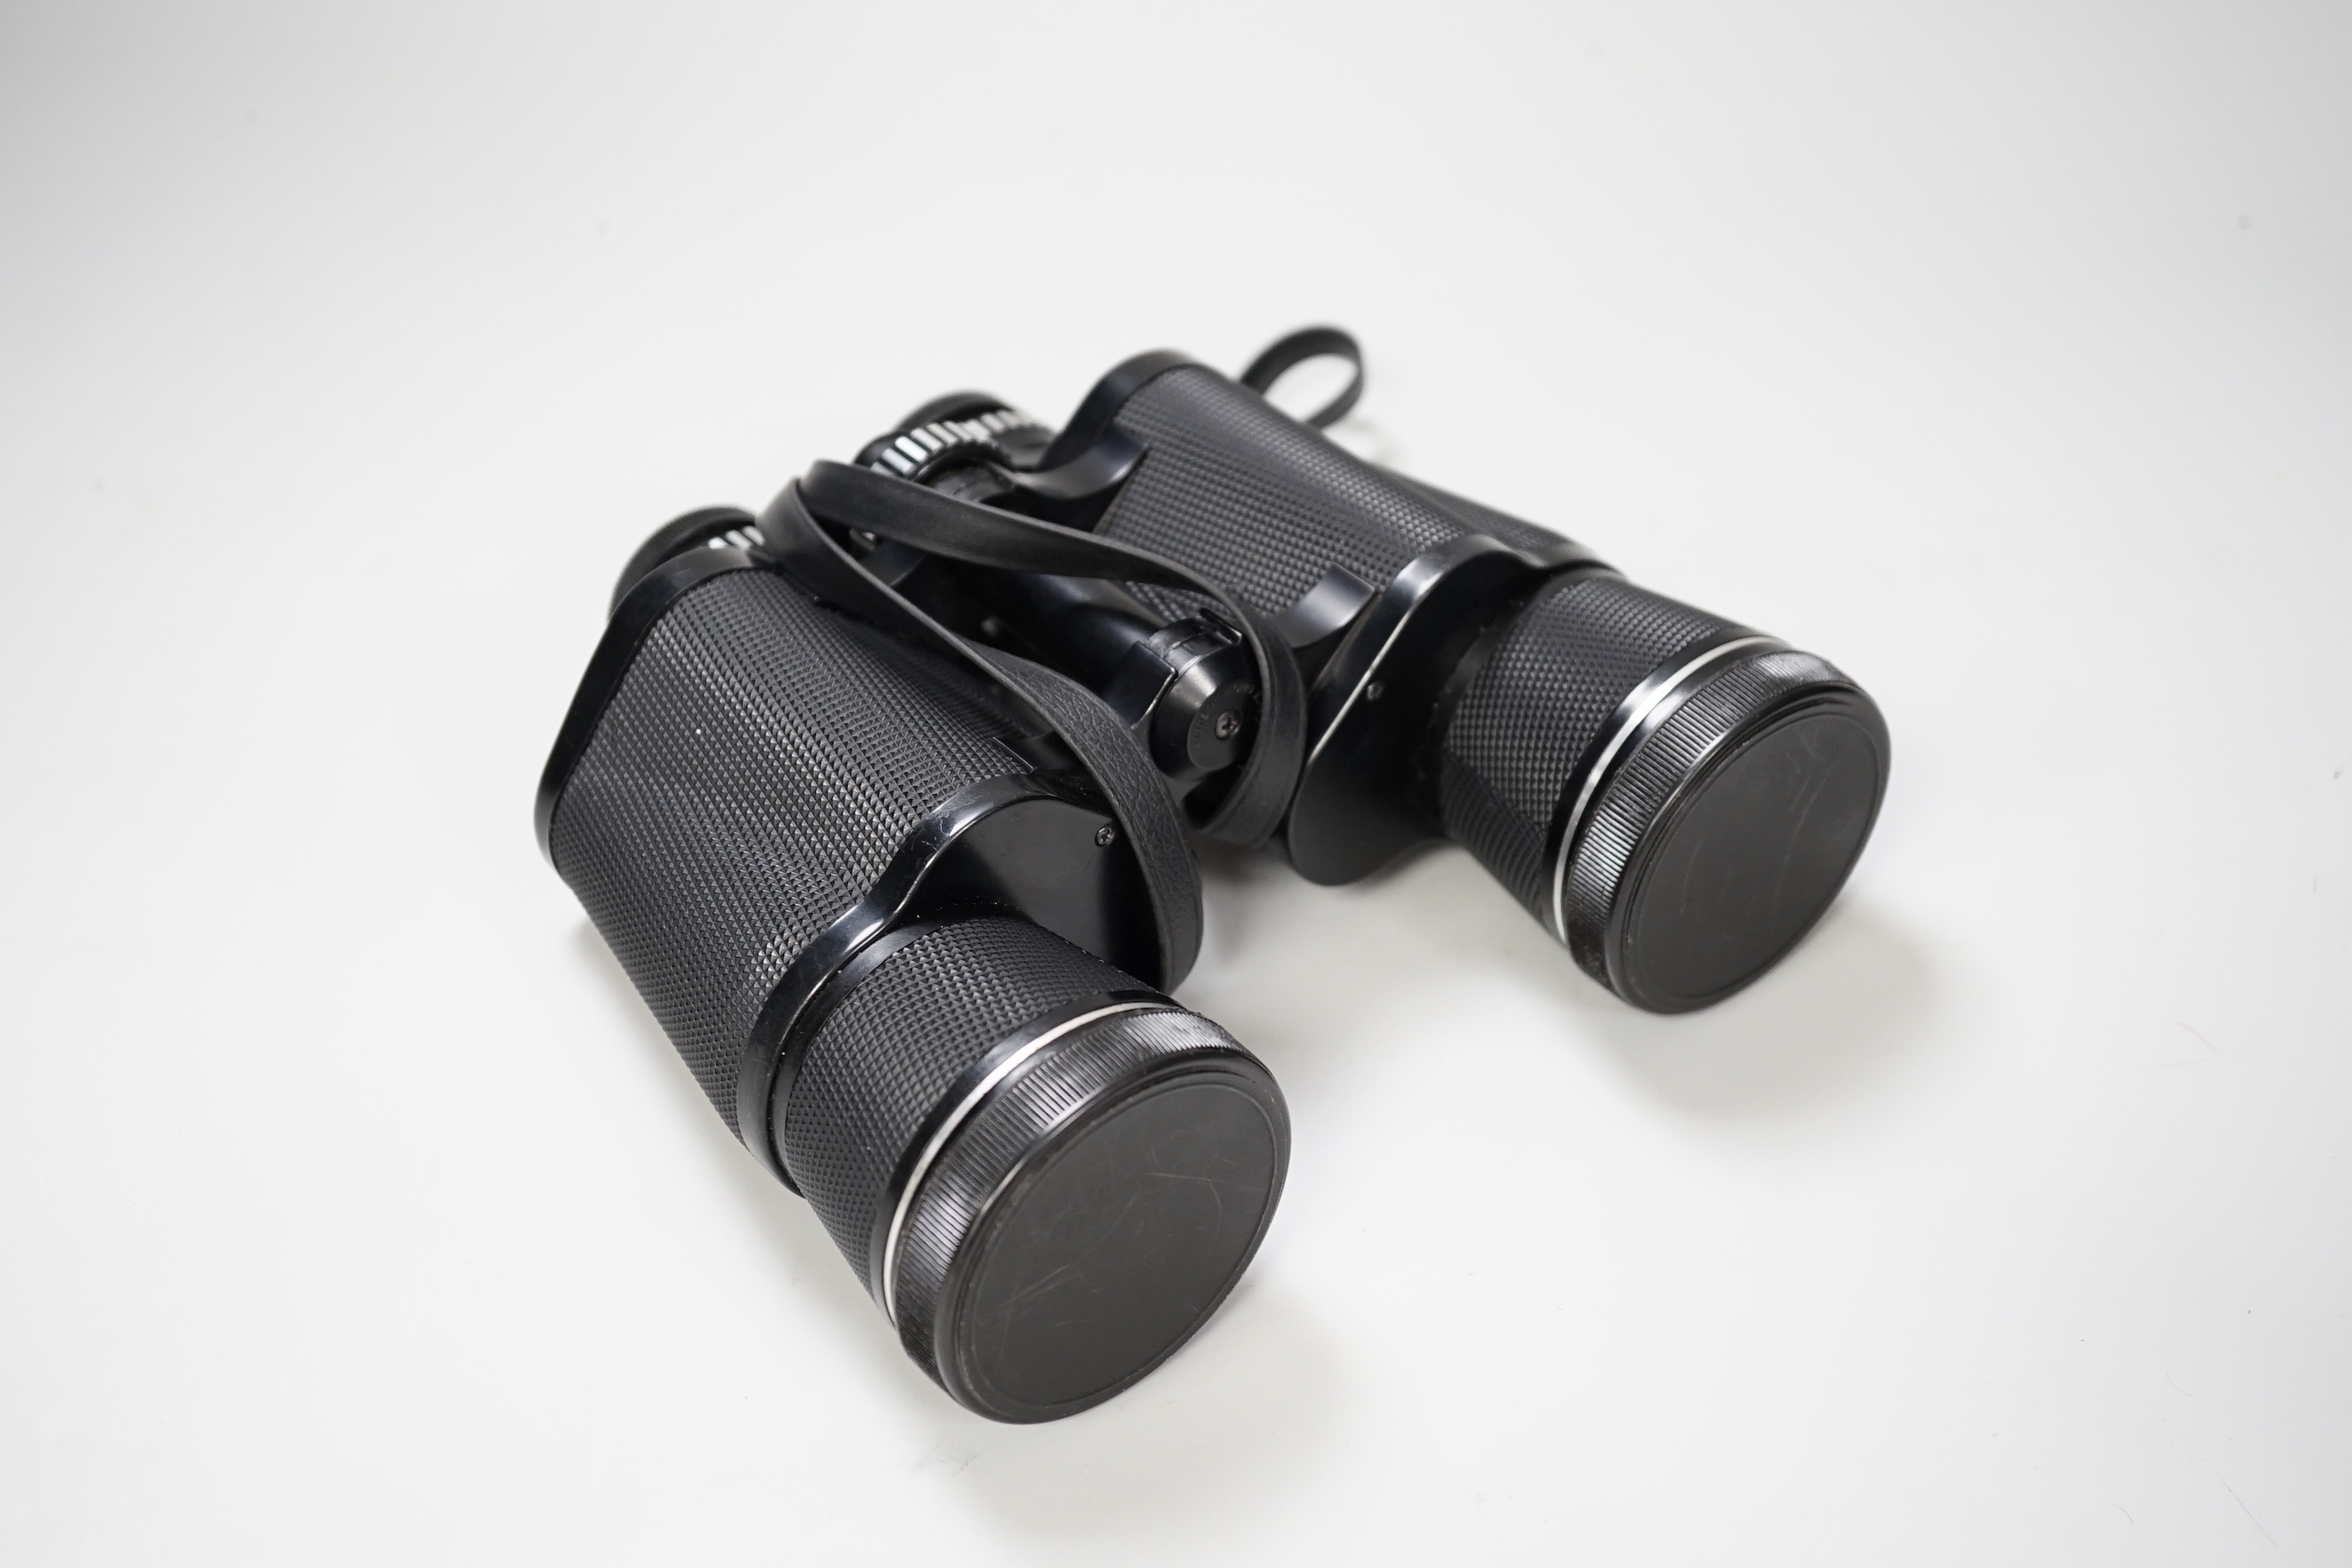 A pair of Prinzlux binoculars 10 x 50 and a pair of Tasco binoculars 20 x 60